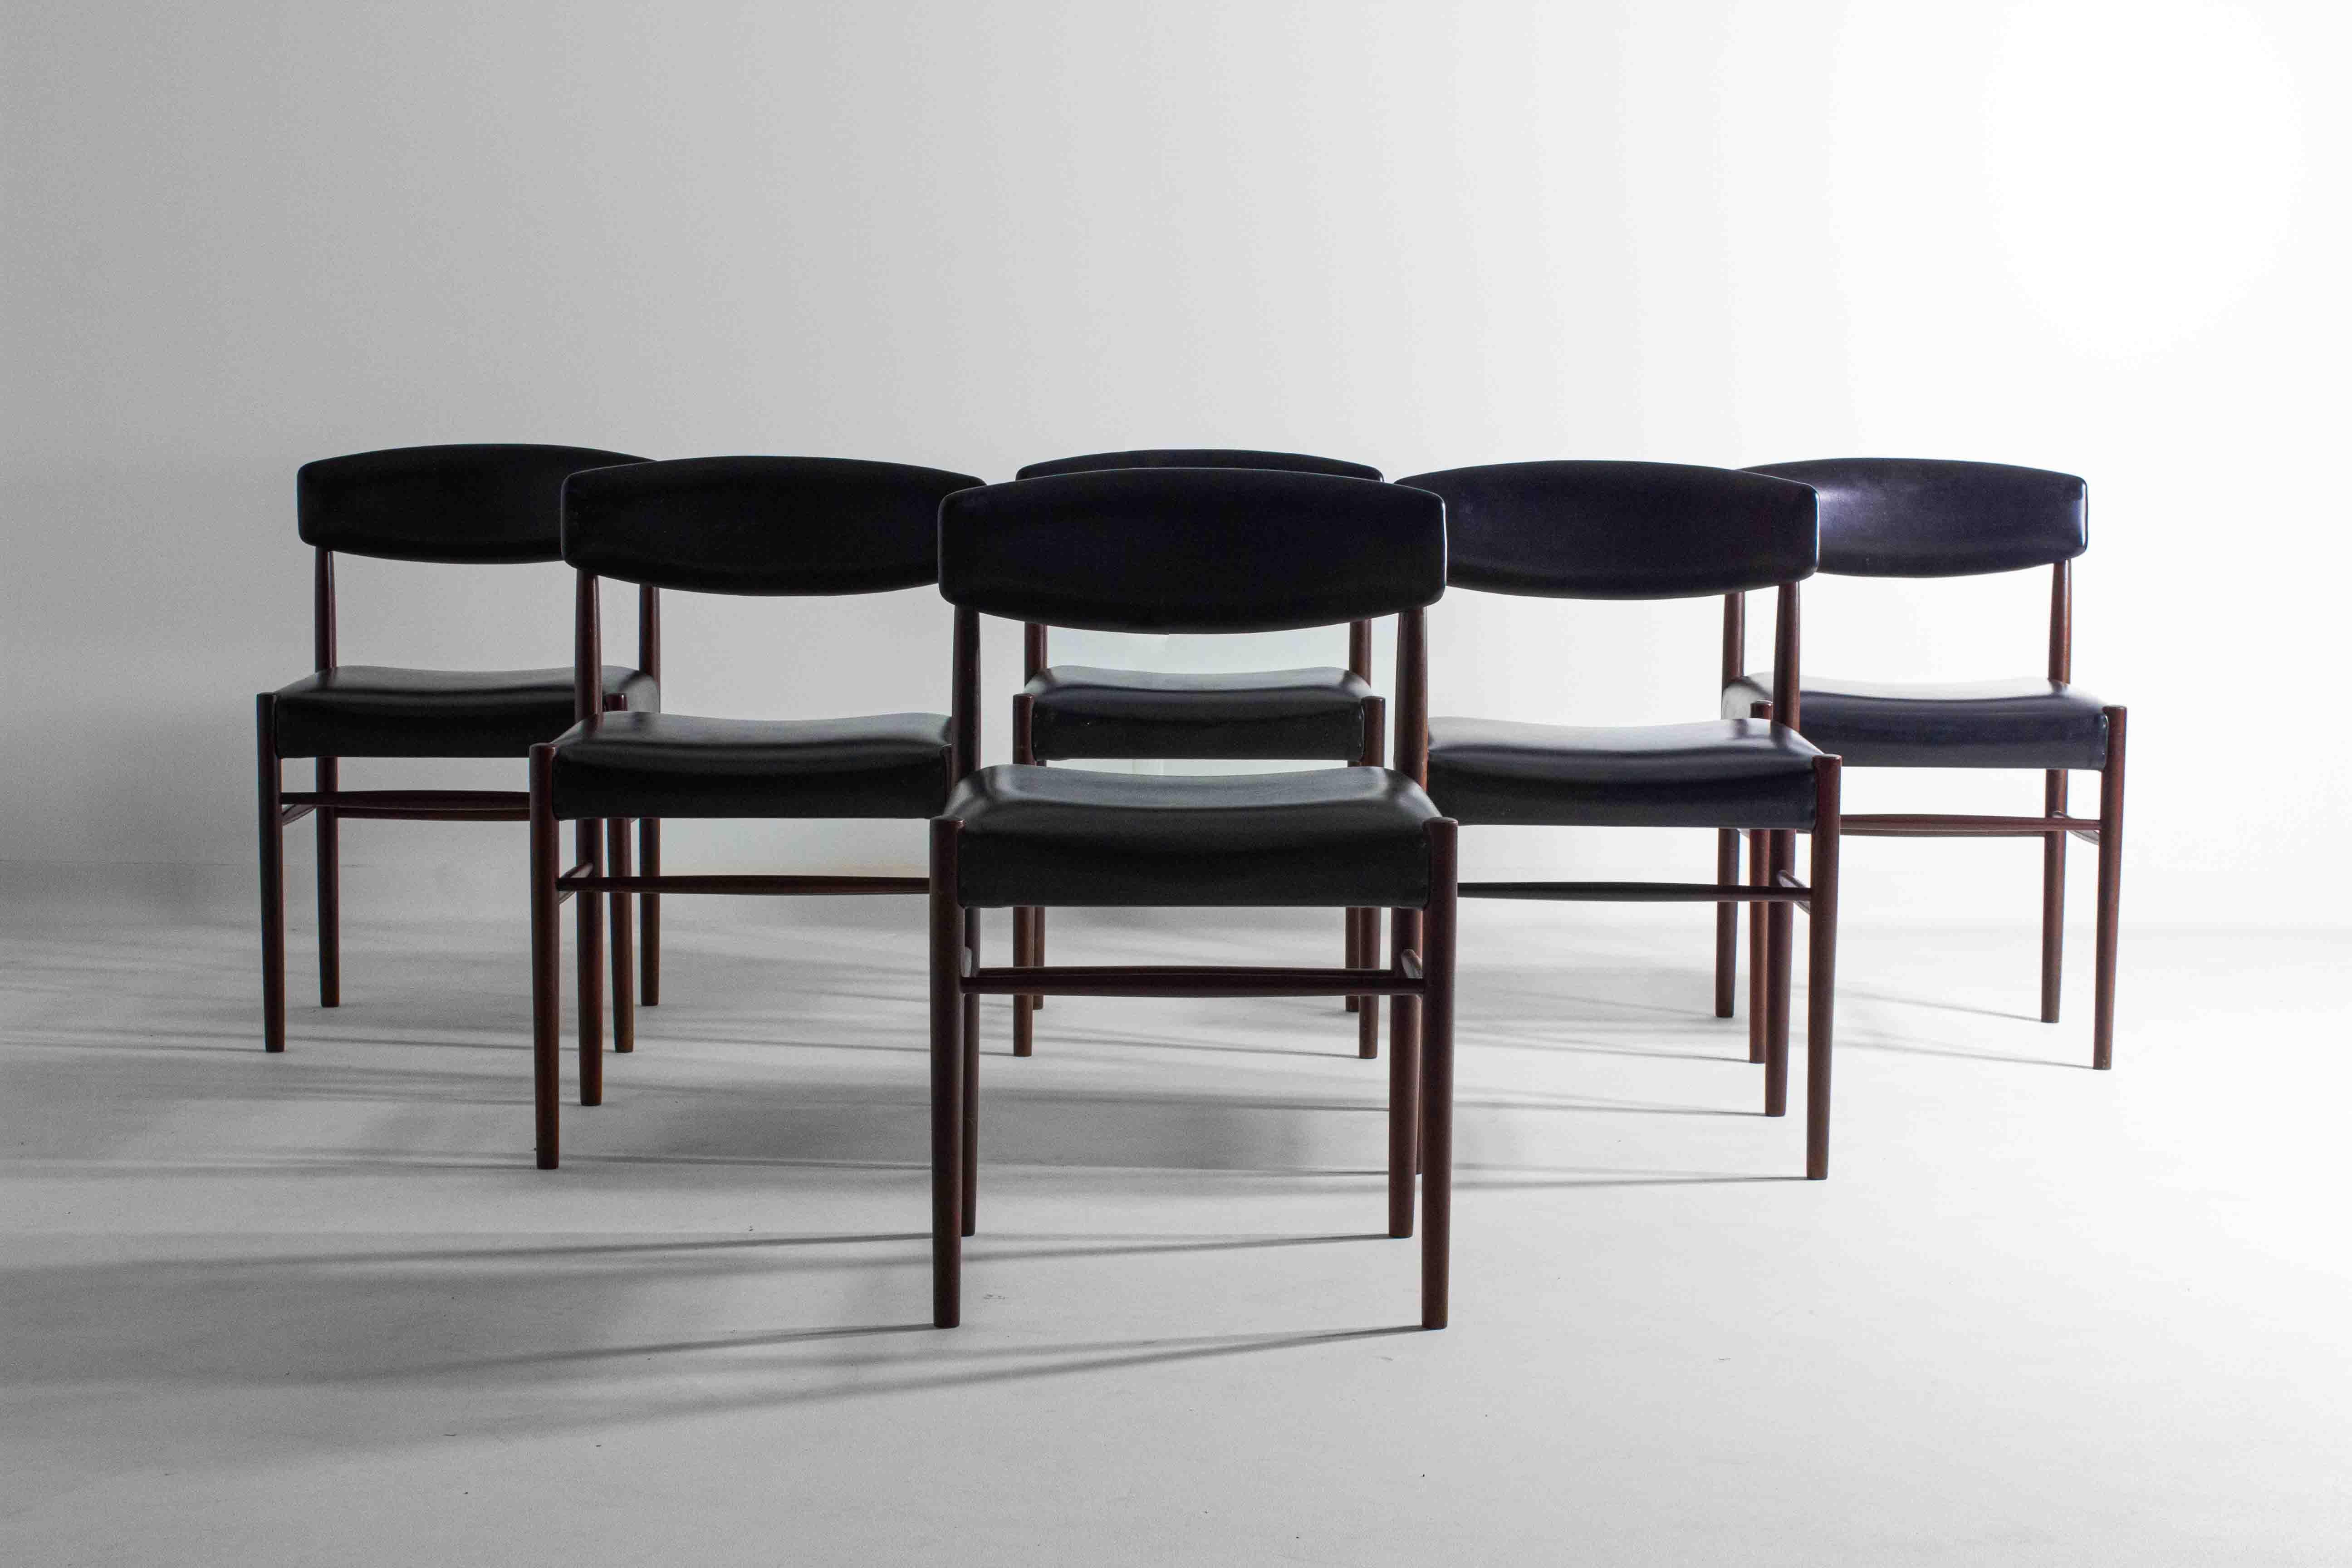 Cet ensemble de six chaises en bois de teck conçu par Oswald Vermaercke pour V-Form allie l'aspect pratique au style classique du milieu du siècle. Ils sont confortables, avec un revêtement en cuir skaï facile à entretenir, et leur design intemporel